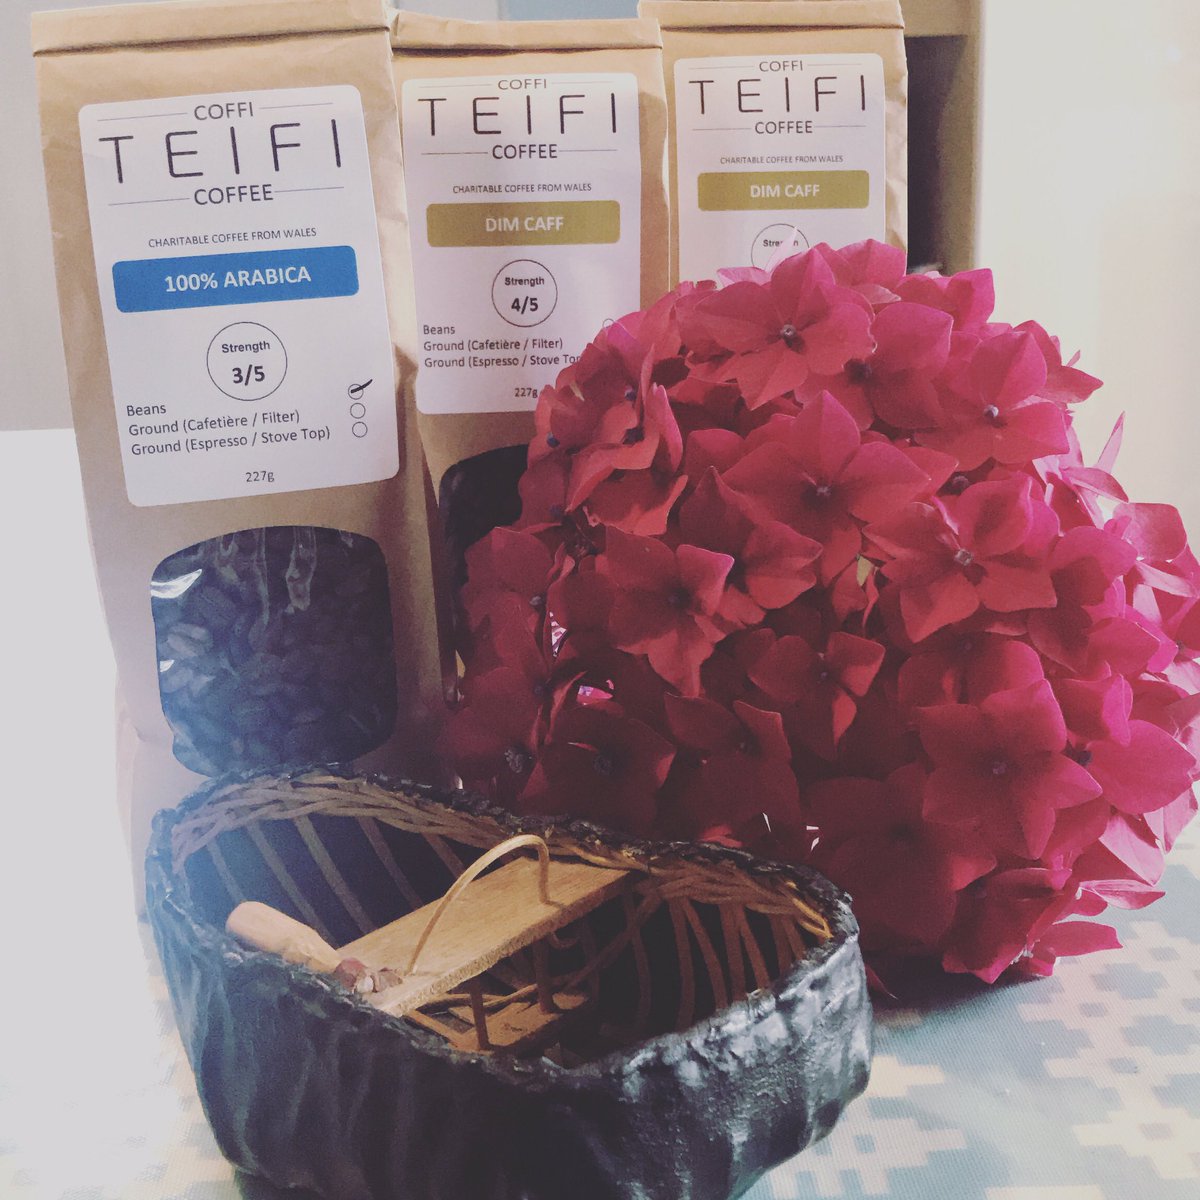 Parsel hyfryd wedi cyrraedd ☕️ 😍 My post smelled lovely today! #coffi #coffee @TeifiCoffee #Teifi